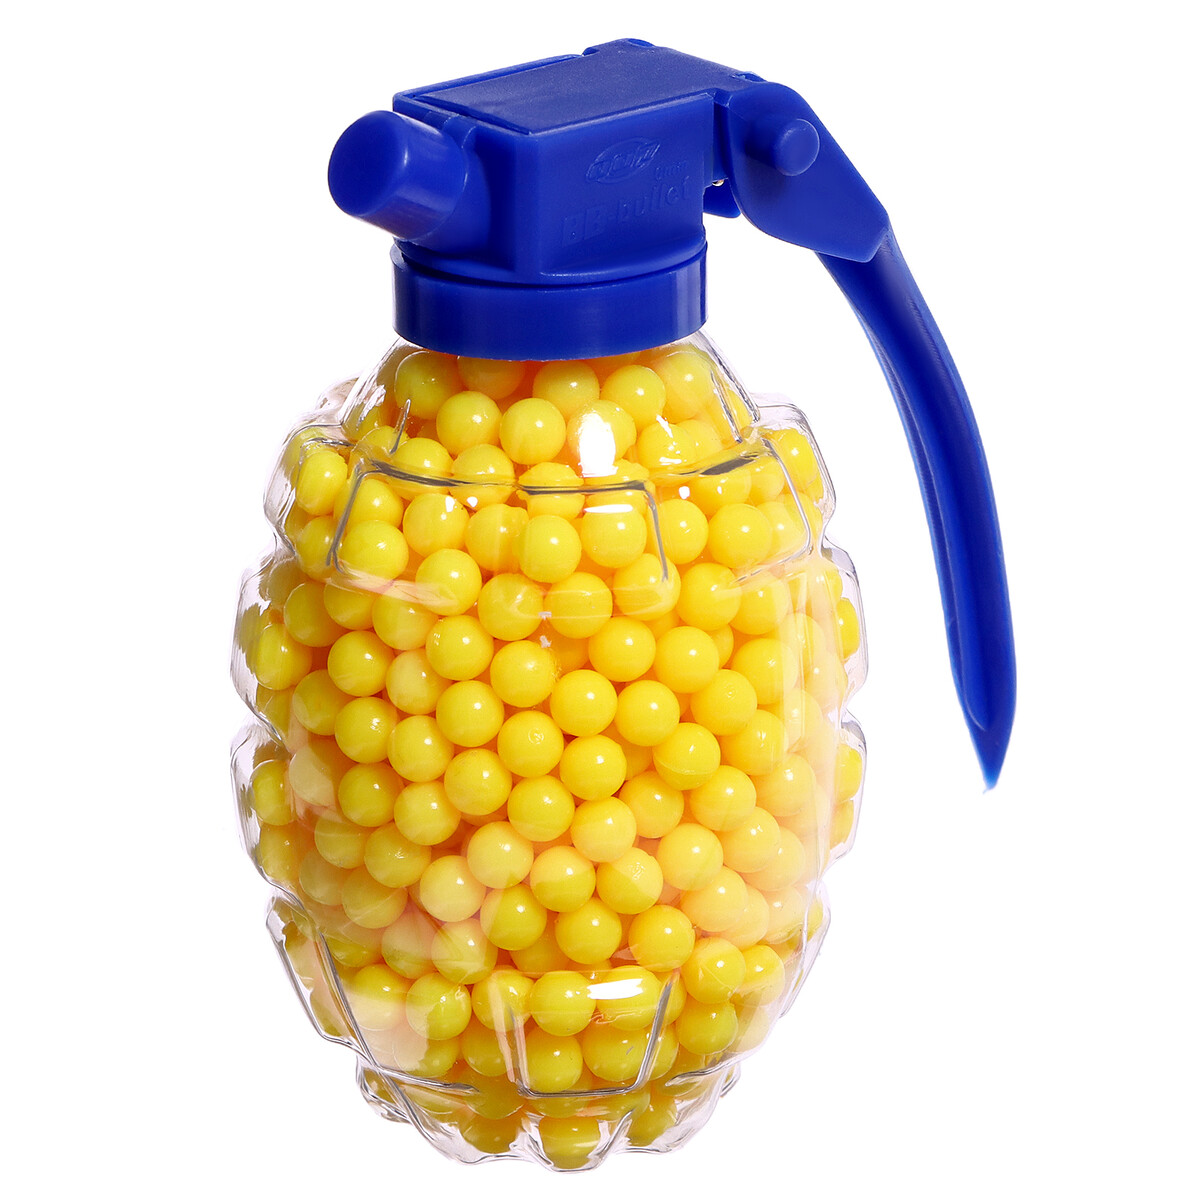 Пульки пластмассовые в гранате, 800 штук пульки 6 мм в рожке 500 шт желтый